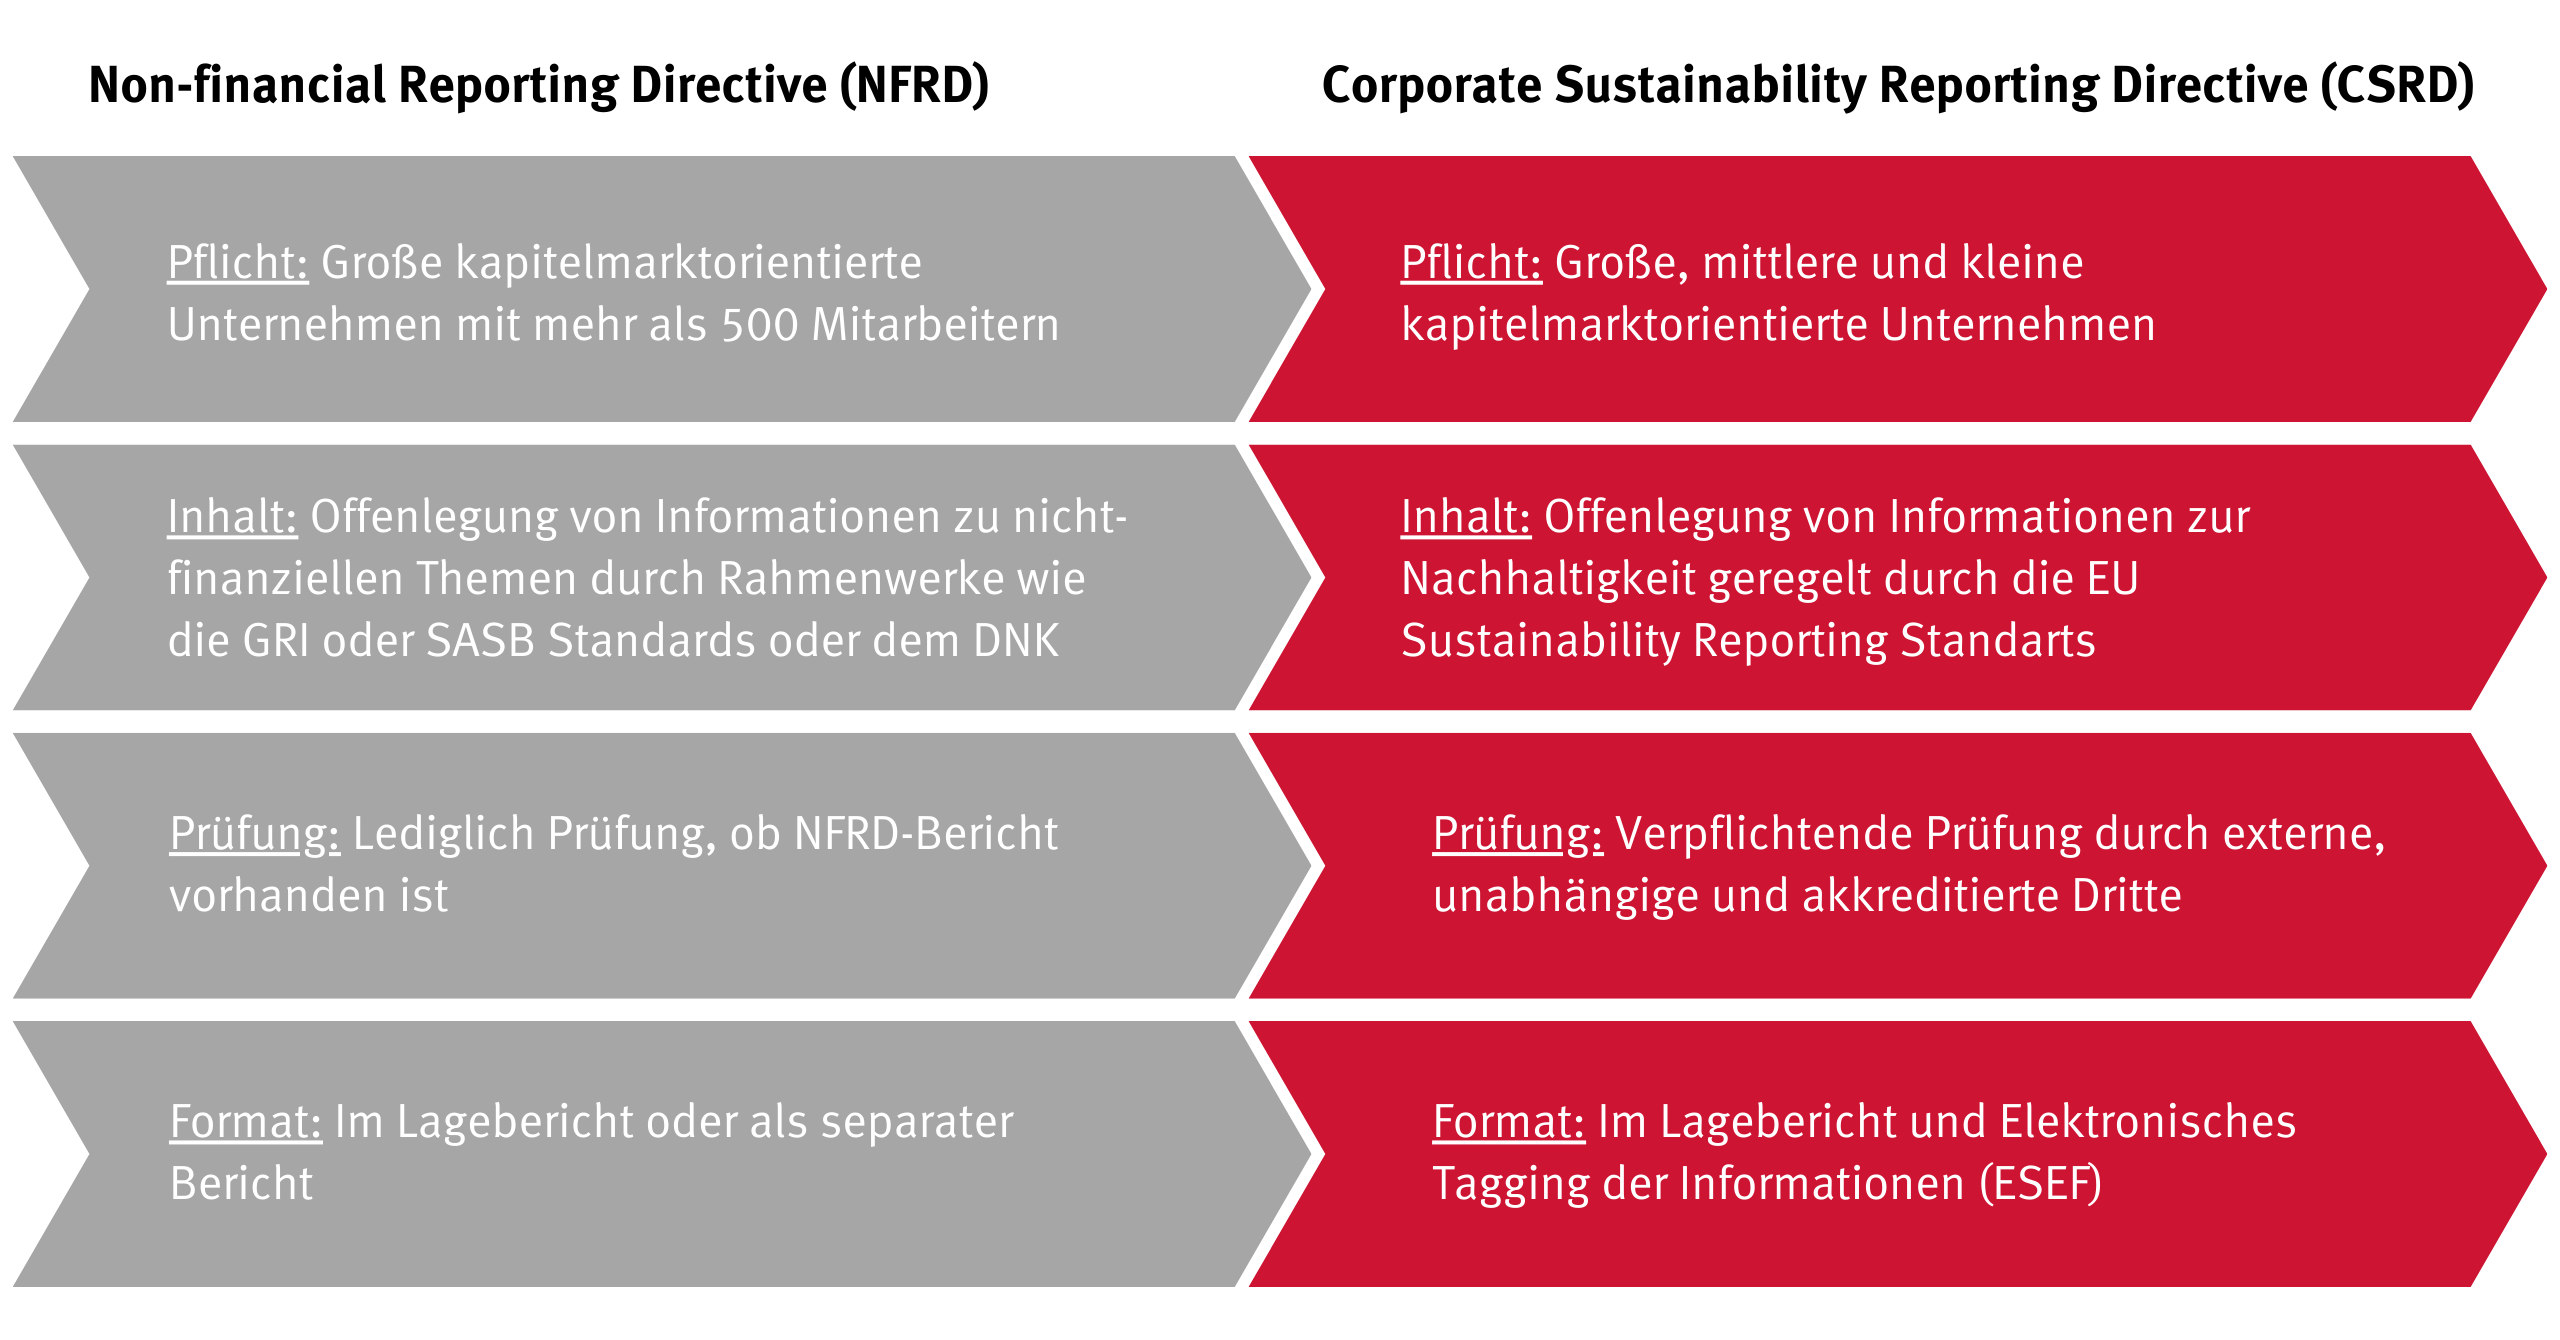 Änderungen der CSRD im Vergleich zur NFRD